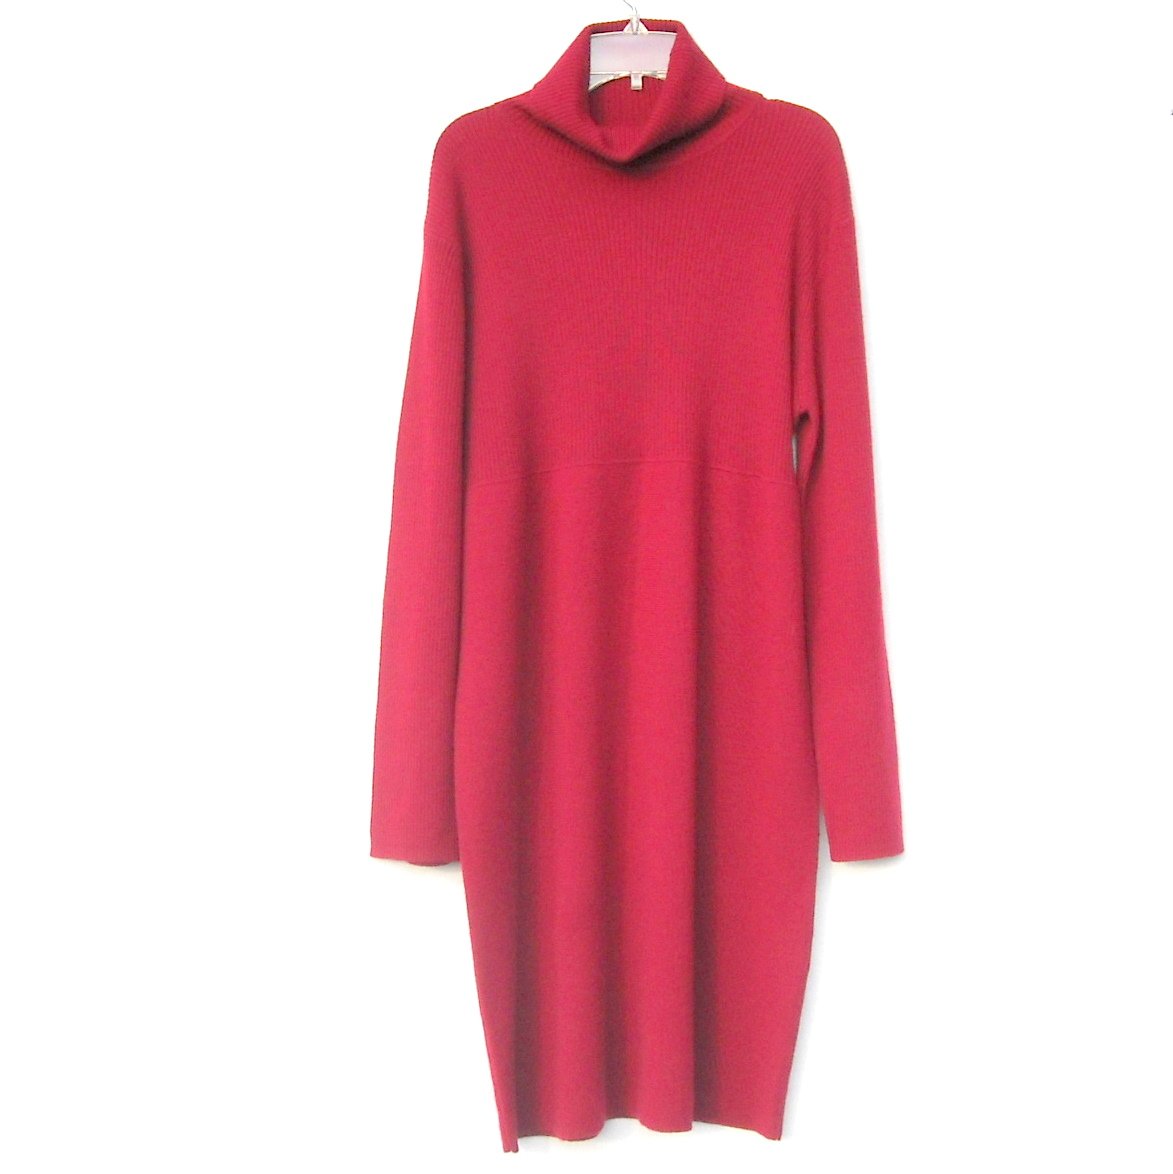 Mimi Maternity Knit Red Dress Size L